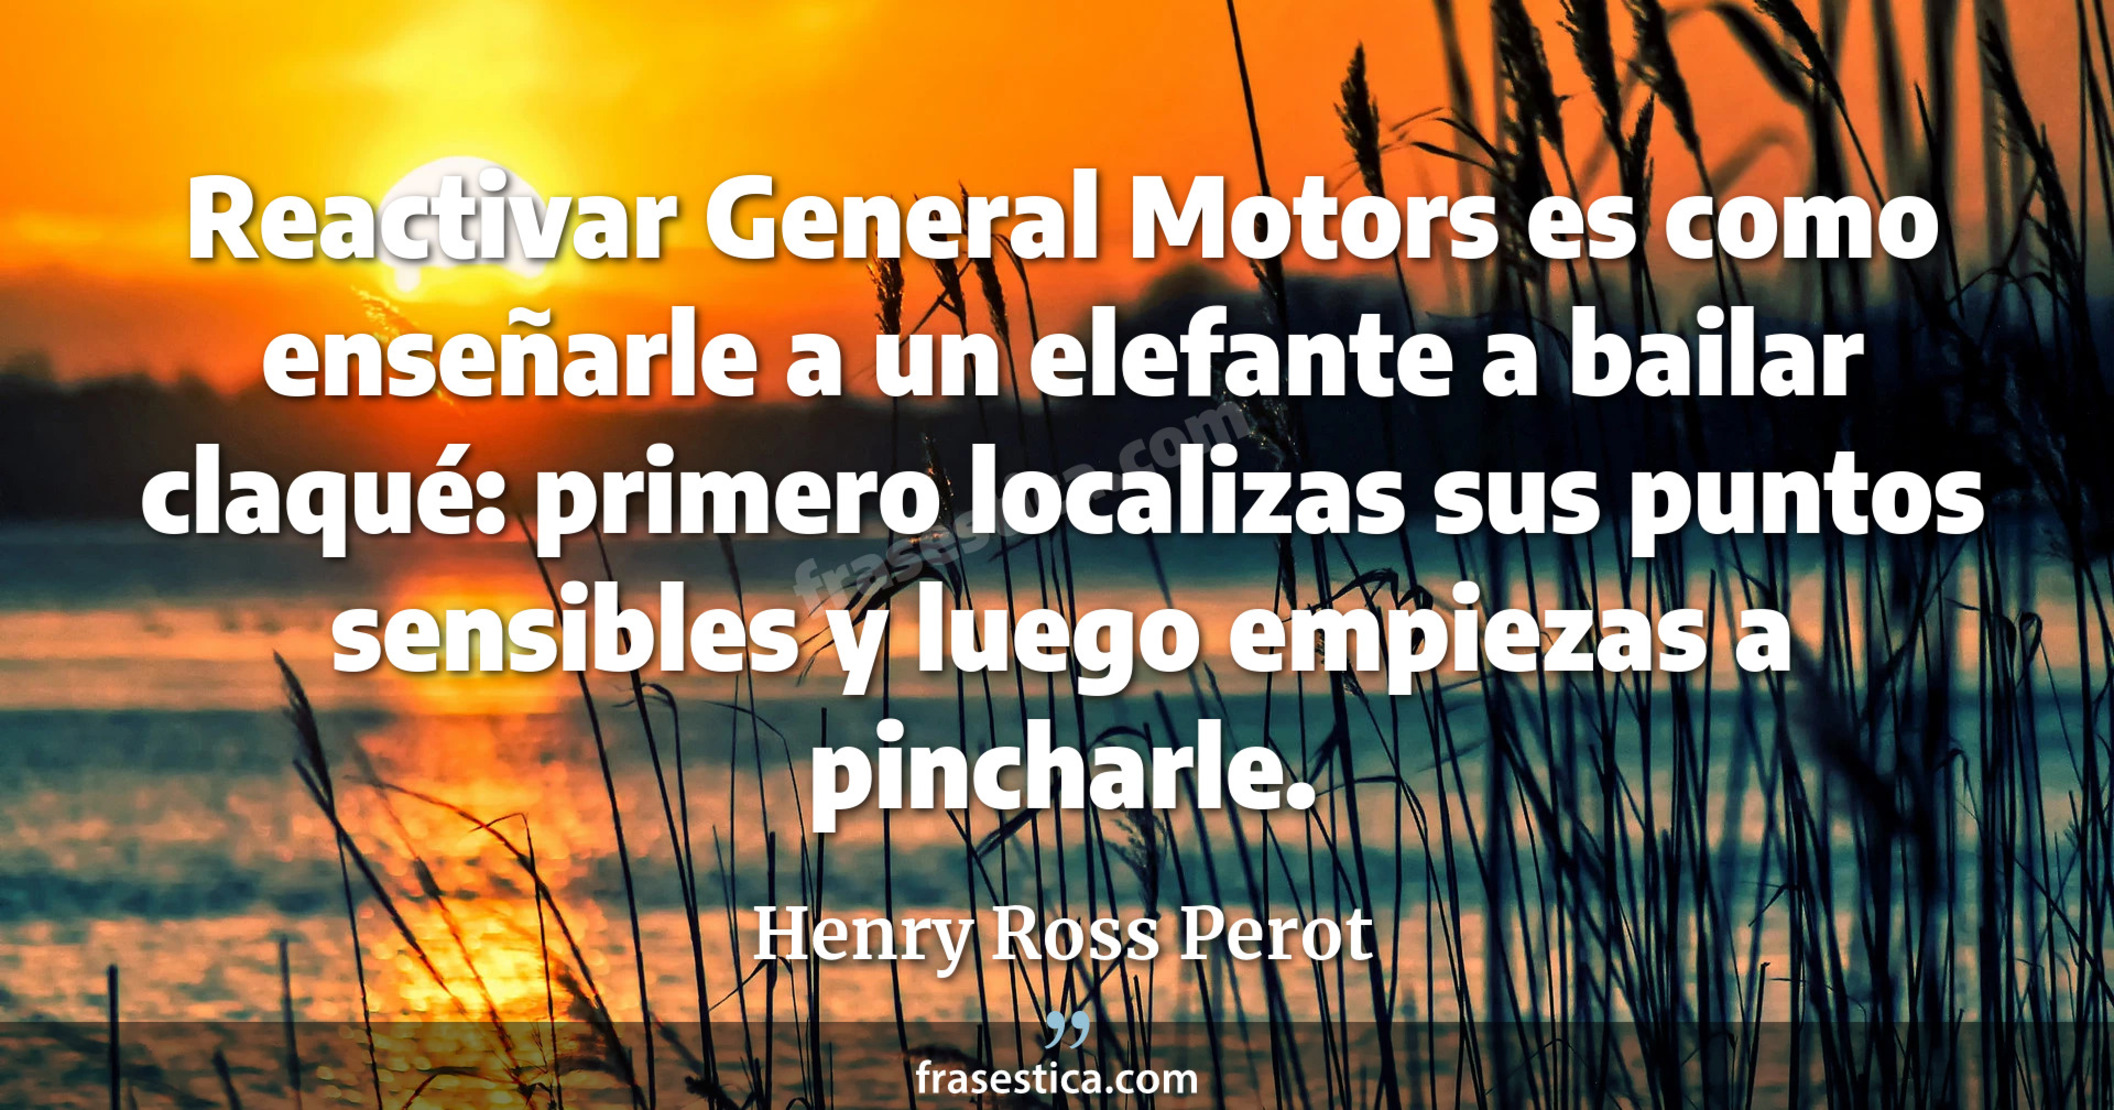 Reactivar General Motors es como enseñarle a un elefante a bailar claqué: primero localizas sus puntos sensibles y luego empiezas a pincharle. - Henry Ross Perot